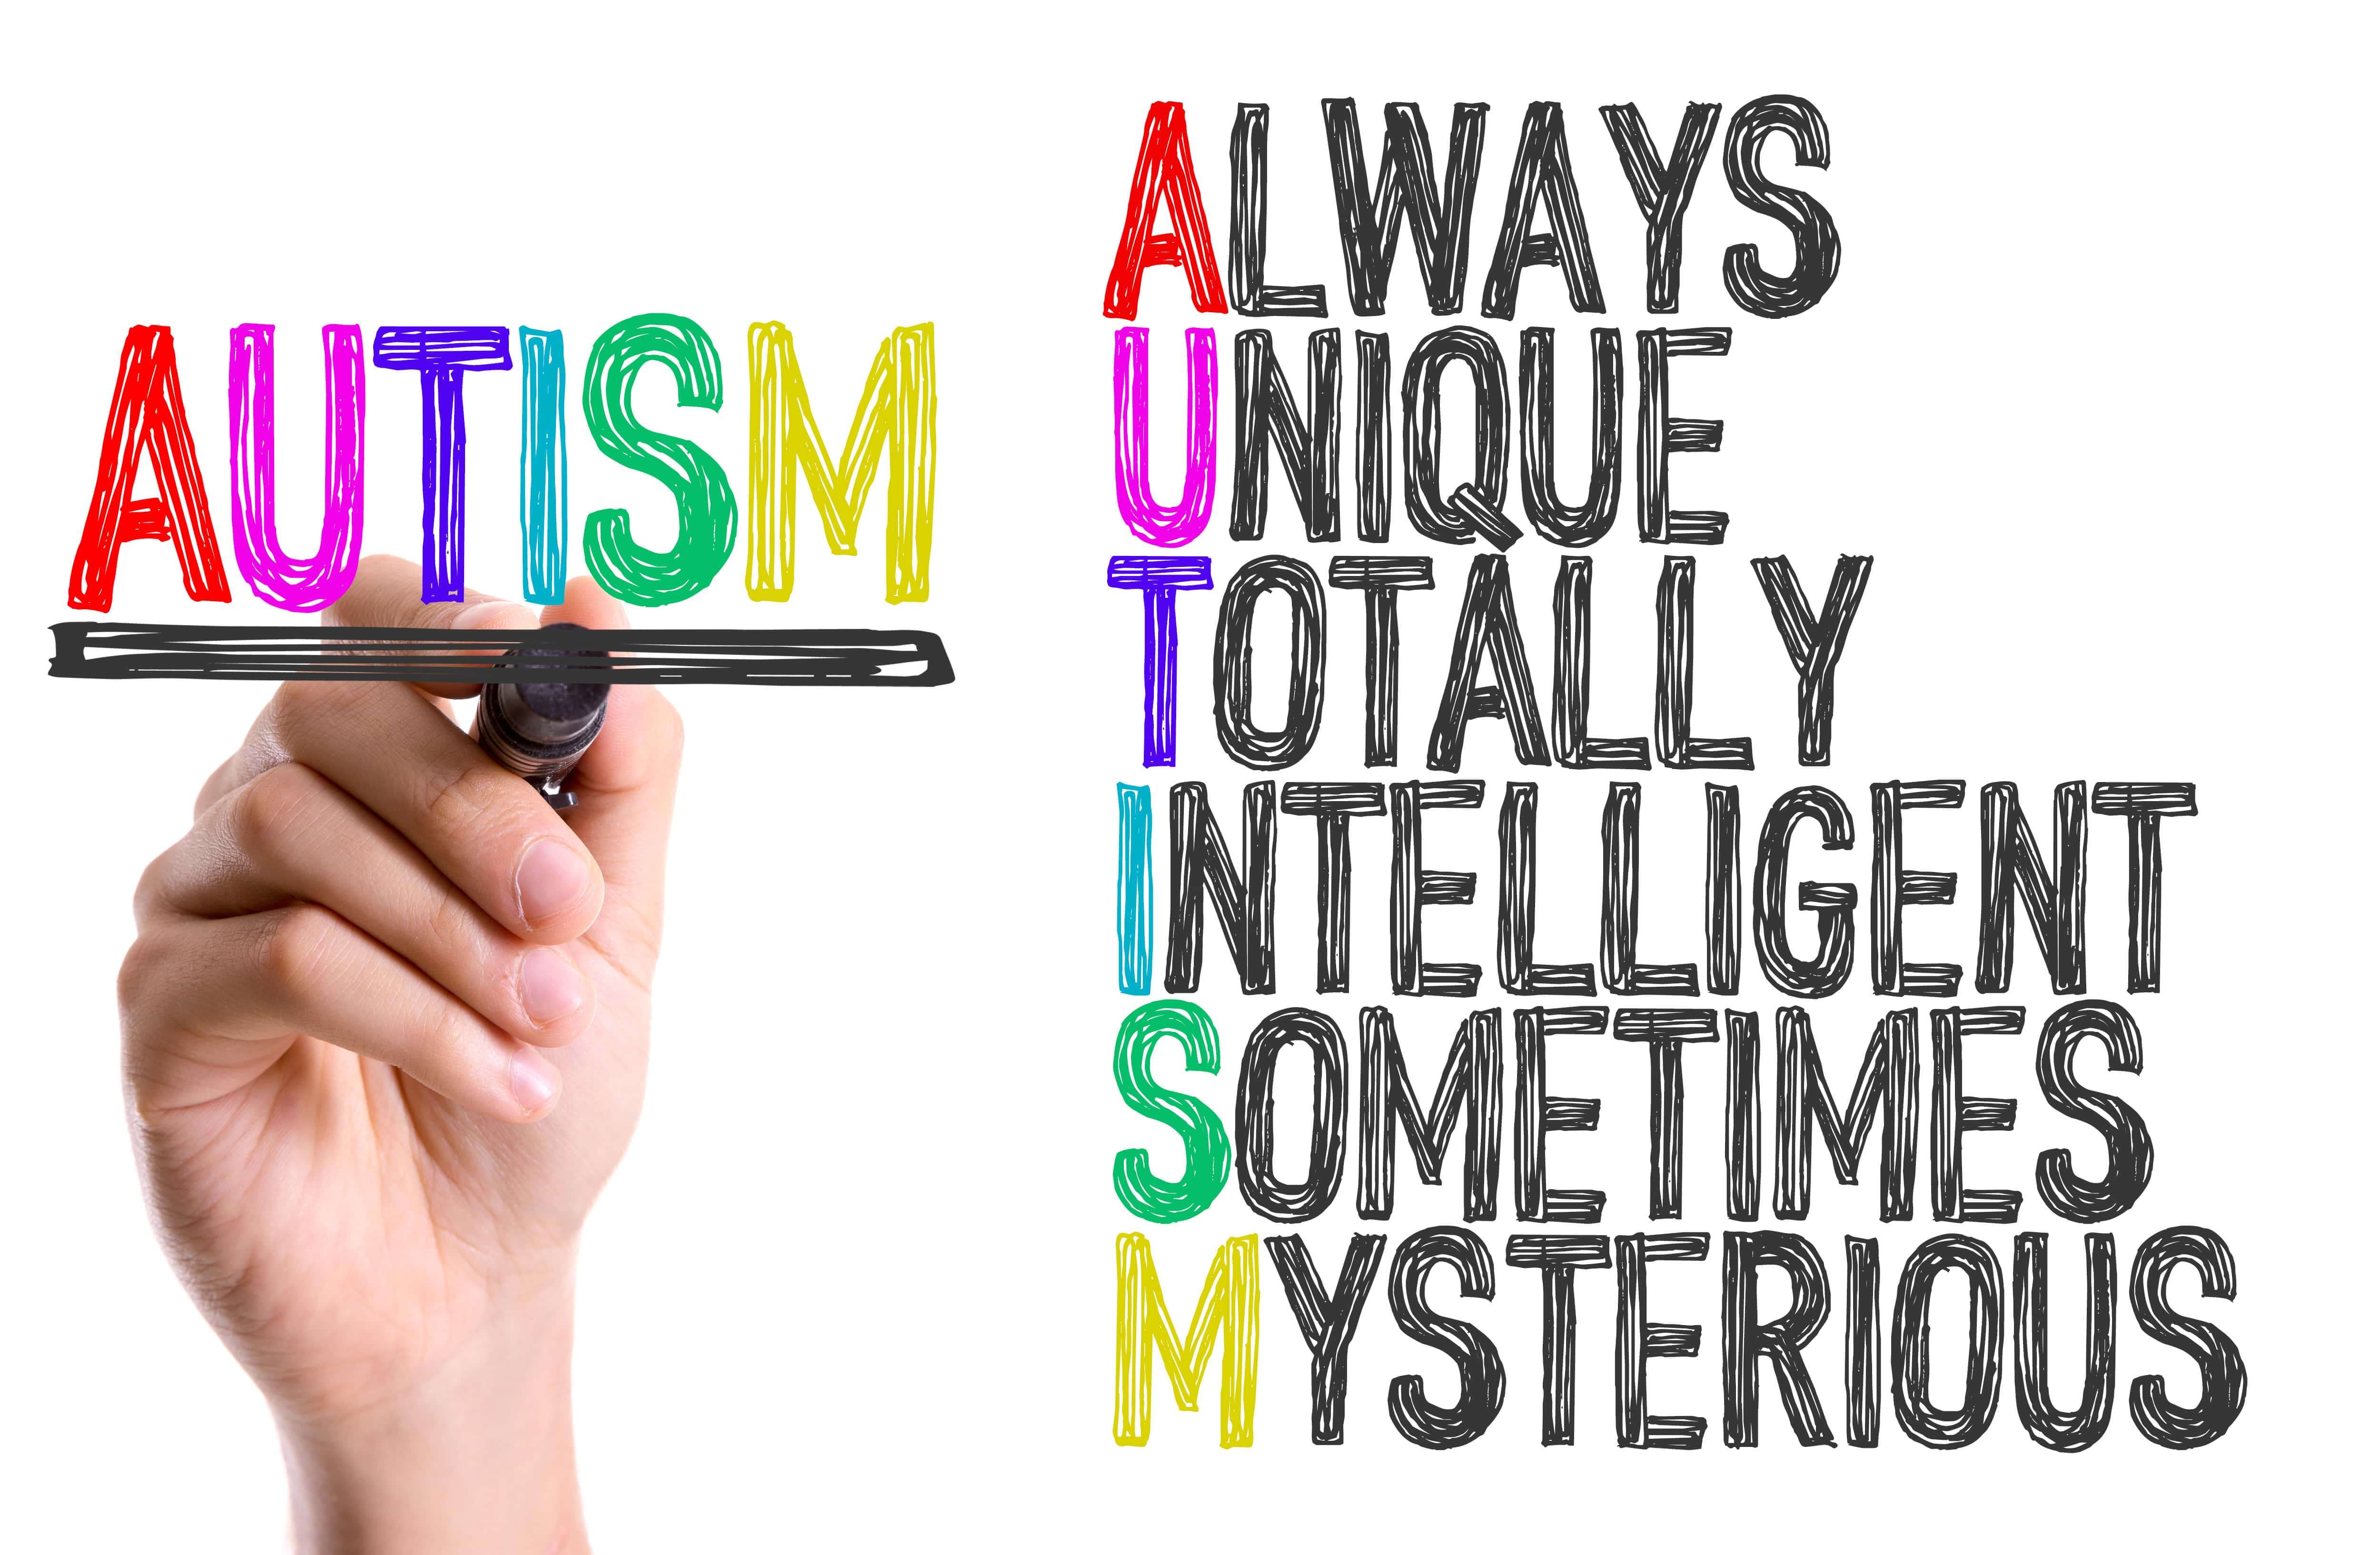 اوتیسم چیست و چرا به این بیماری مبتلا می شویم؟